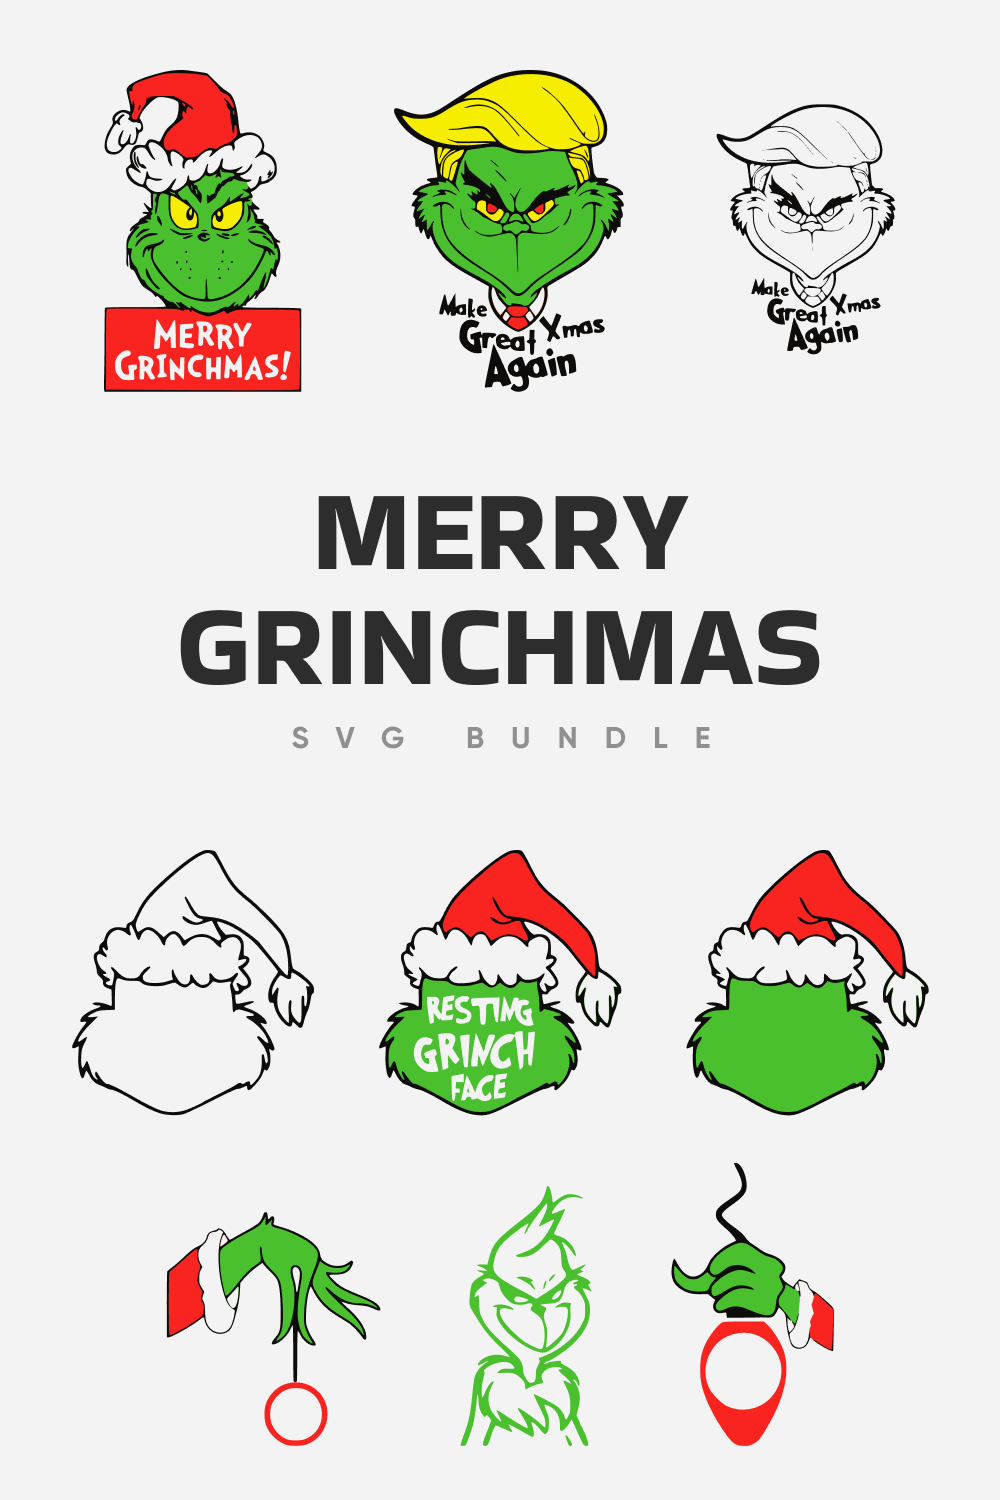 Merry grinchmas SVG bundle.